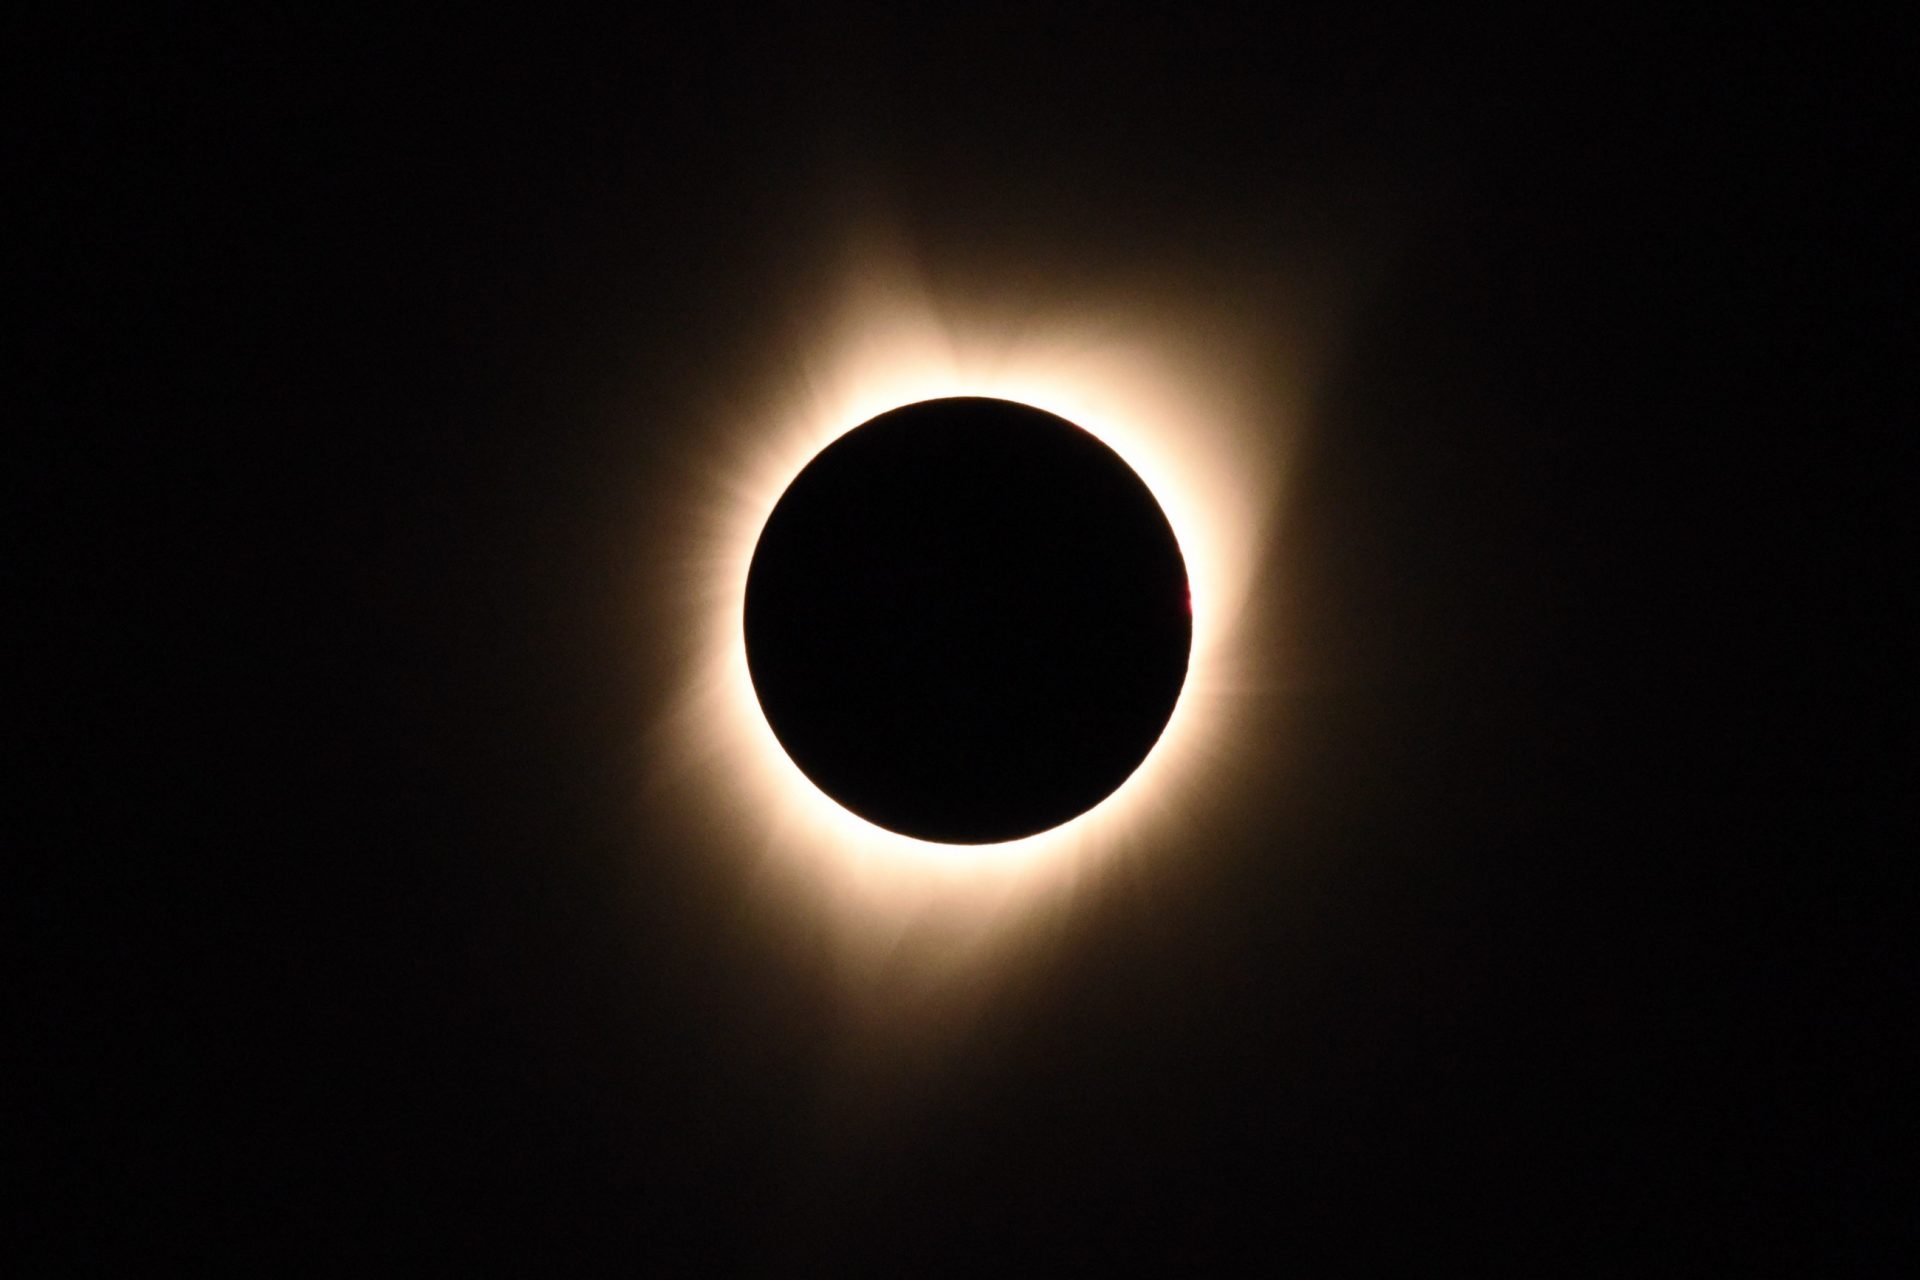  Eclipse solar total: Perú y toda Latinoamérica ‘quedará a oscuras’ este 2 de julio